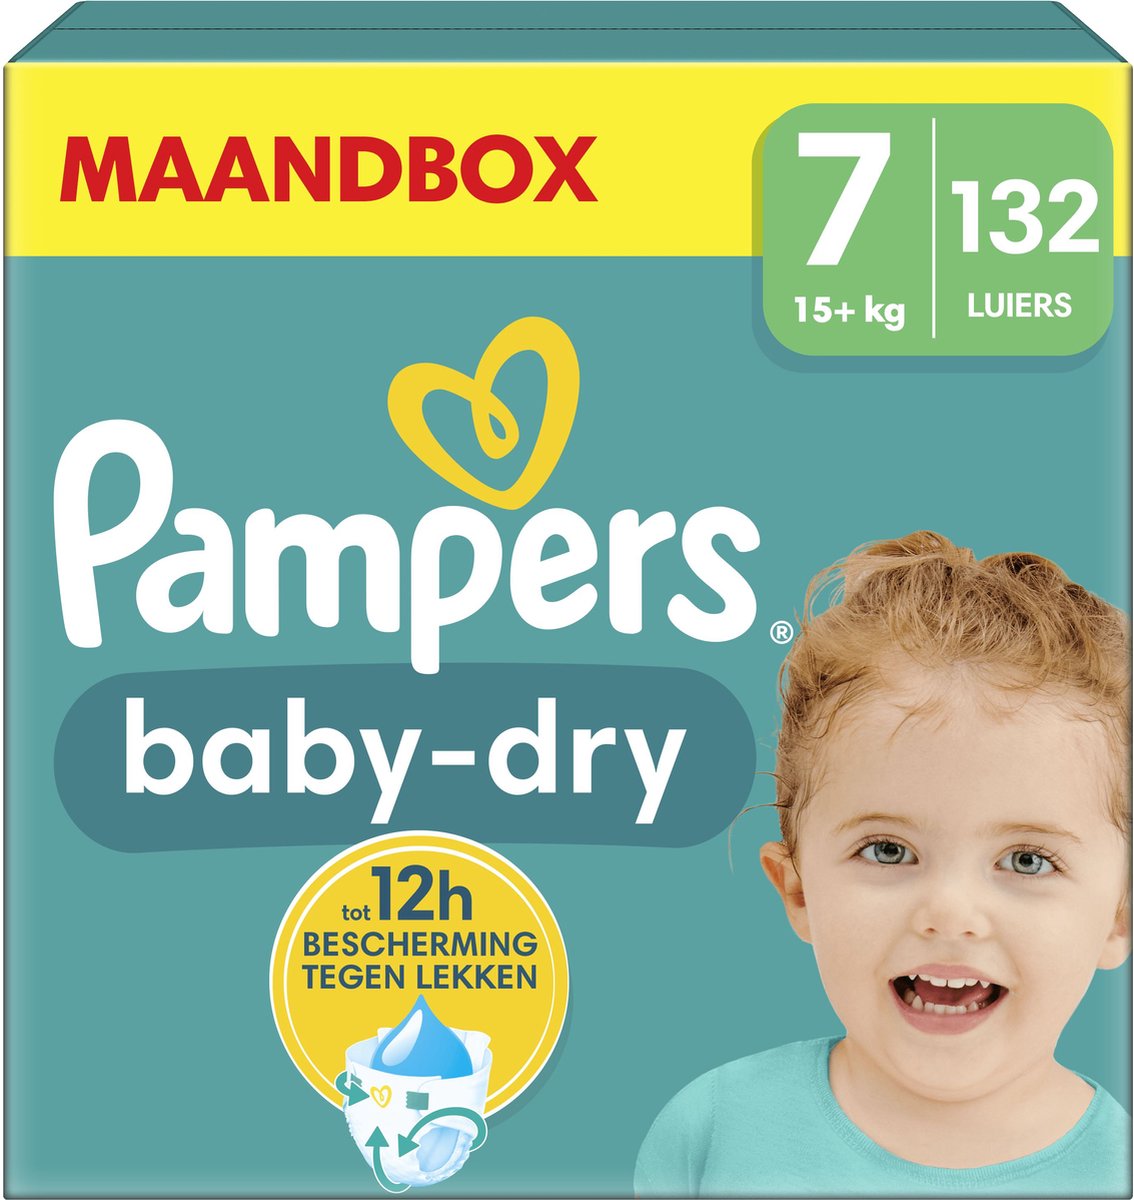 Pampers Baby-Dry - Maat 7 (15kg+) - 132 Luiers - Maandbox - Pampers